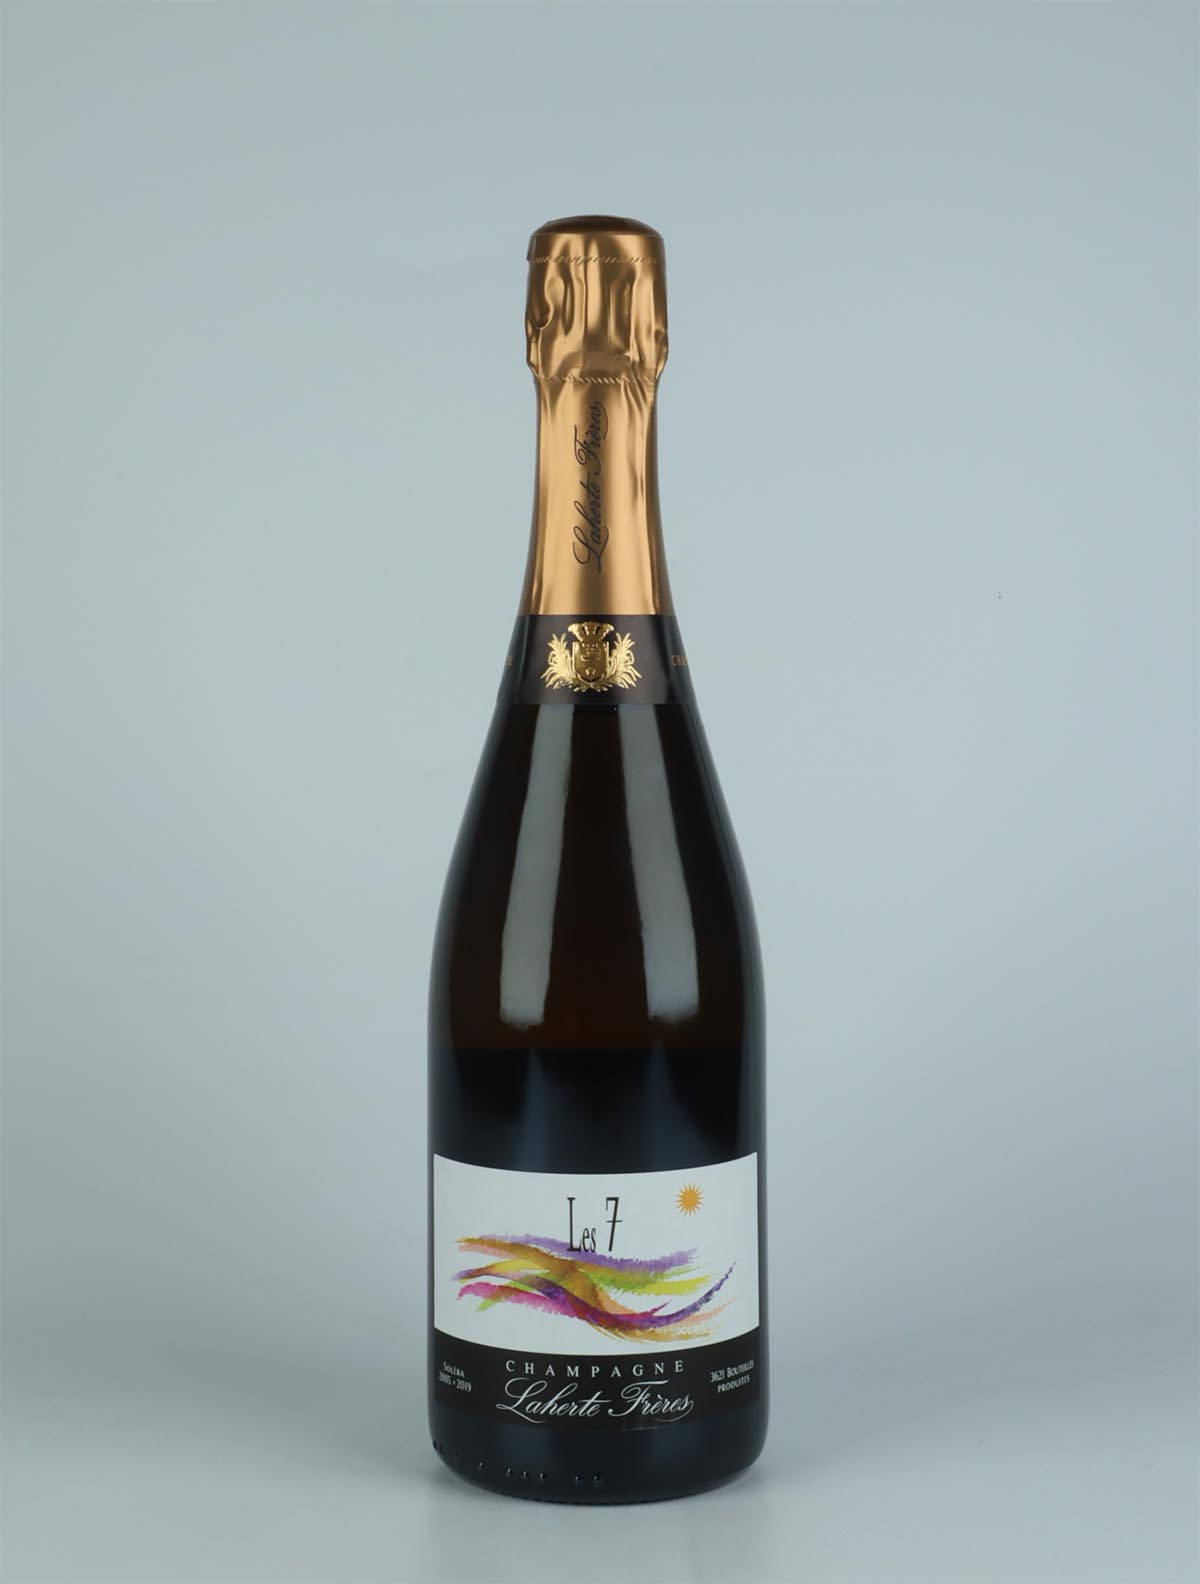 A bottle N.V. Les 7 - Solera Sparkling from Laherte Frères, Champagne in France